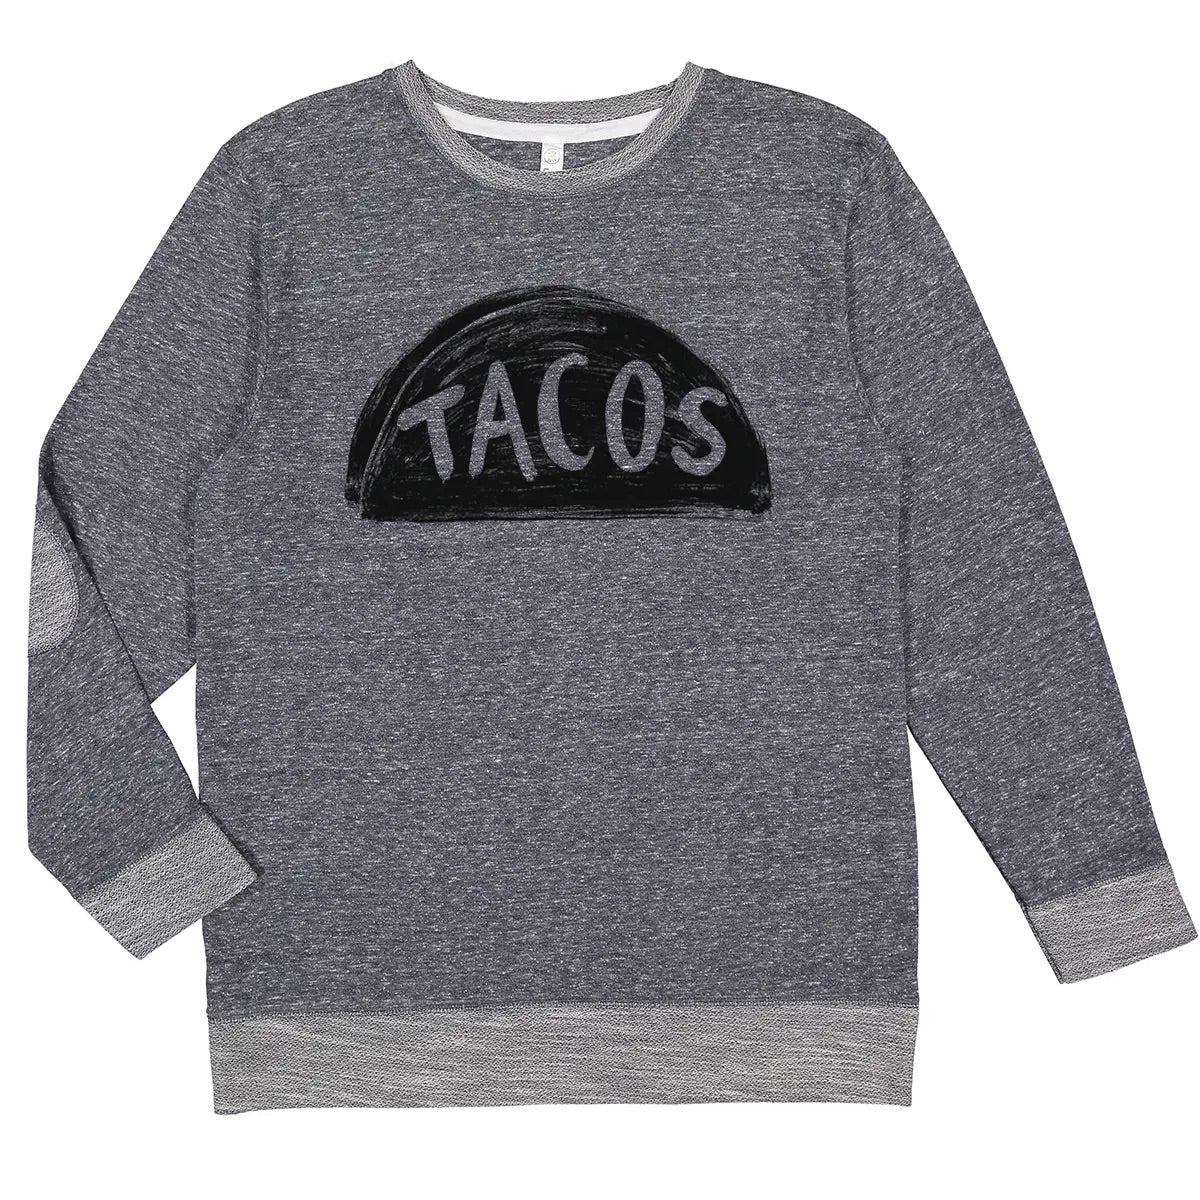 Taco Tuesday Sweatshirt Top